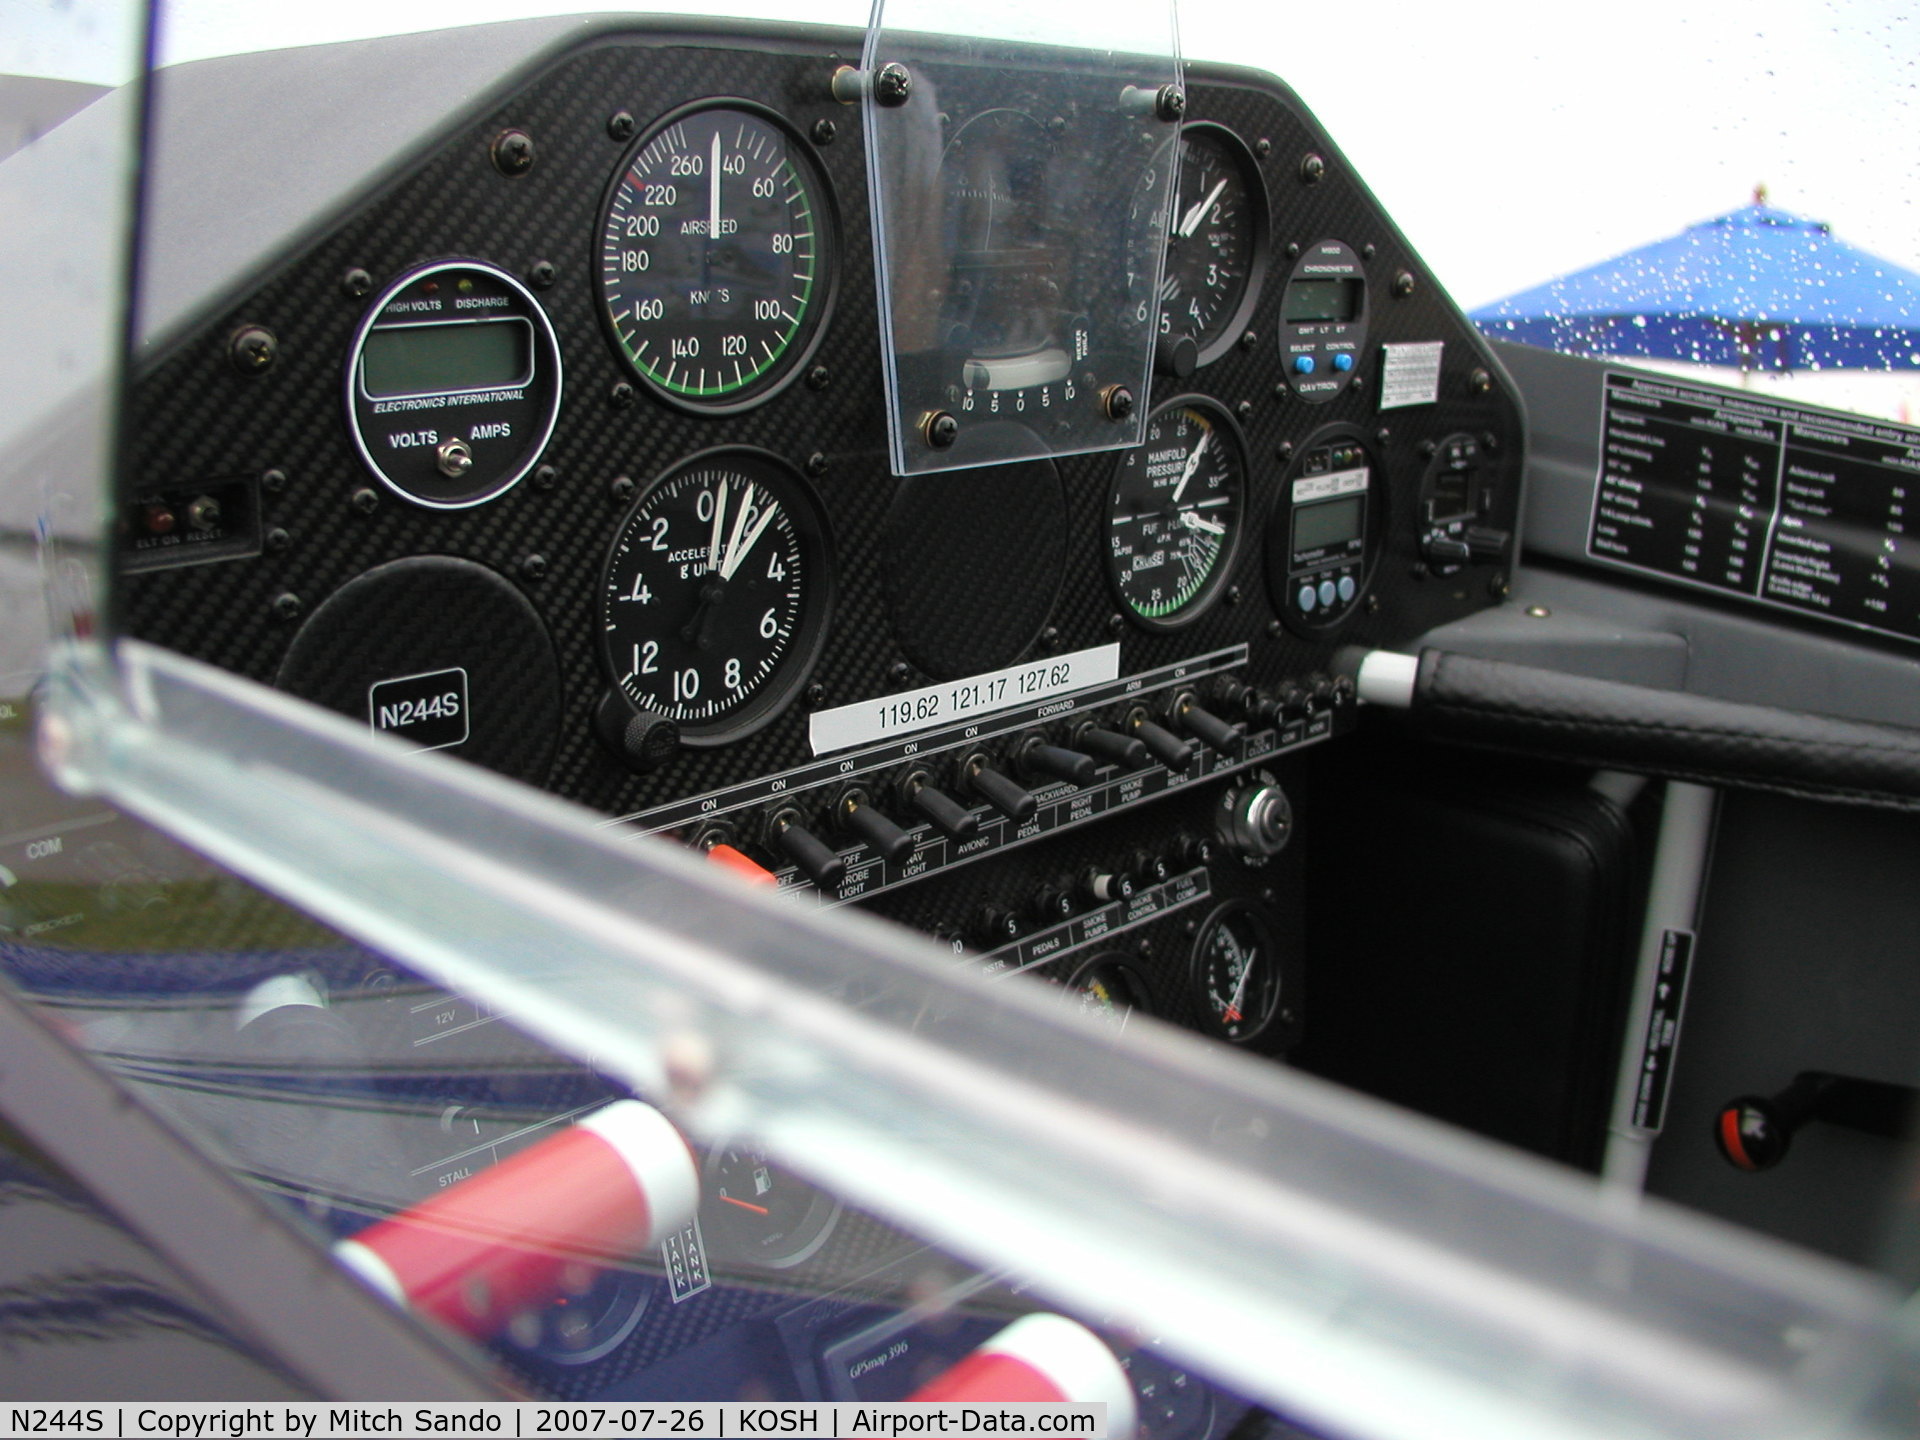 N244S, 2006 Extra EA-300/L C/N 1244, EAA AirVenture 2007.